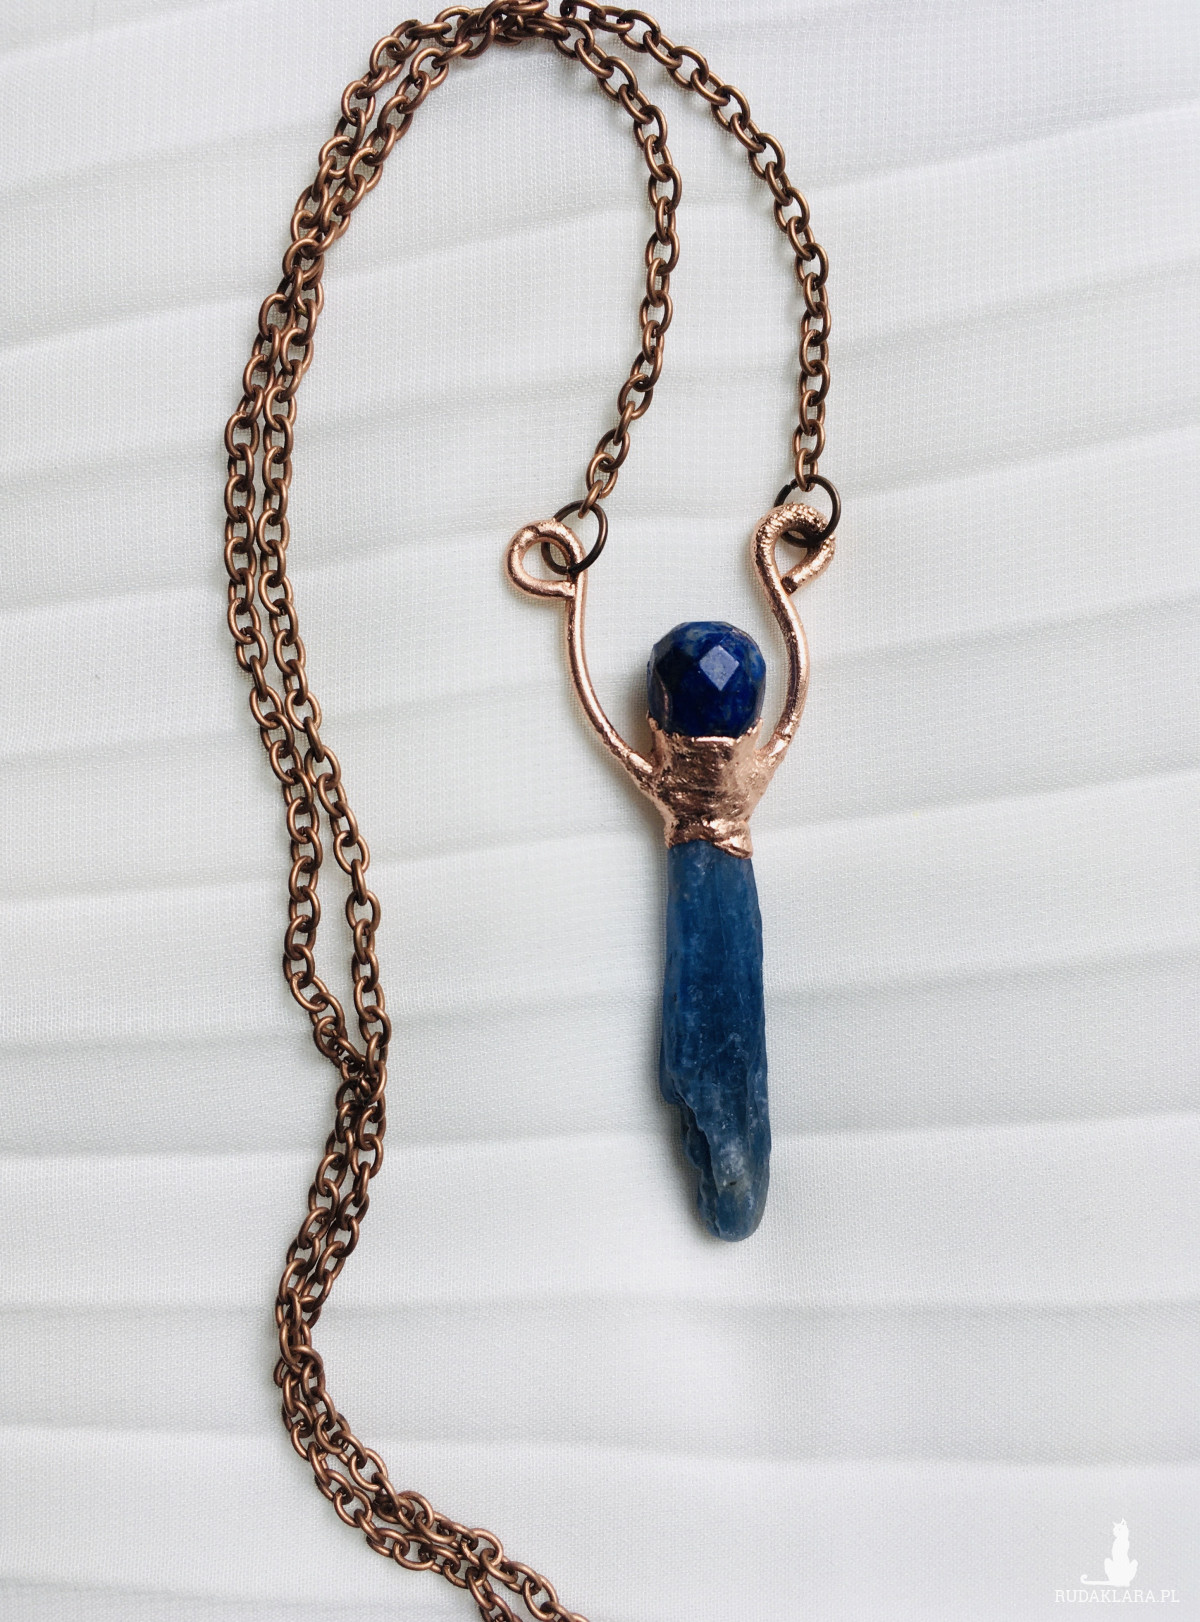 miedziany naszyjnik z kyanitem i lapis lazuli